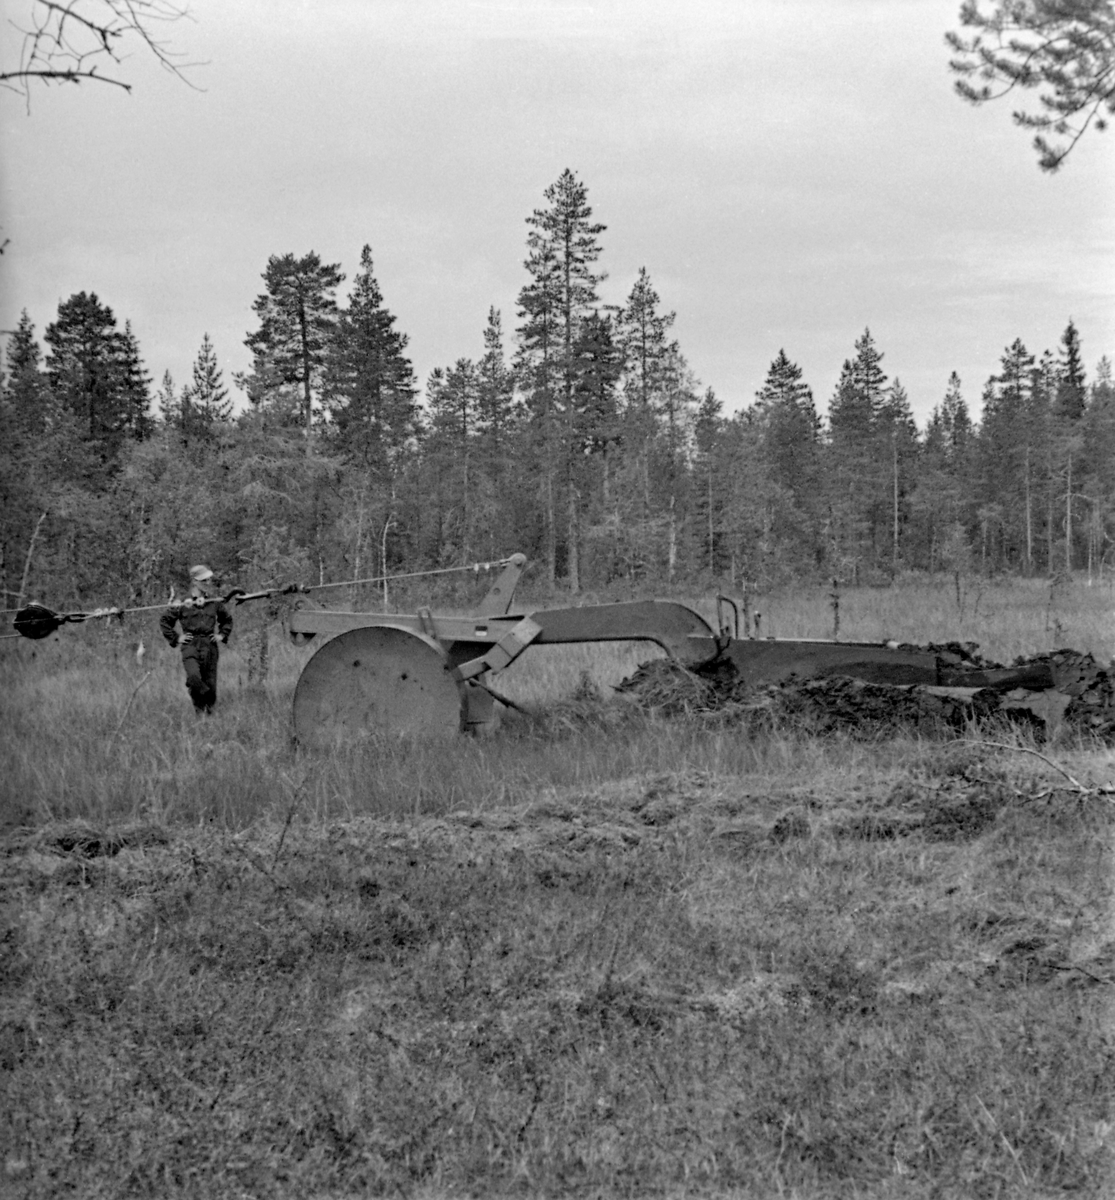 Grøfteplog, en såkalt «Lokomo-plog», fotografert under forsøksdrift på Grue Finnskog sommeren 1957.  Her var både Langmoens skoger og familien Bredesen-Opsets skoger vertskap for slike forsøksdrifter.  Grøfteplogen veide 3,8 tonn og ble trukket ved hjelp av en beltetraktor med bakmontert vinsj.  I front hadde plogen et par brede stålhjul, som skulle hindre at den grov seg ned i myra.  Derfra gikk det en kraftig, nedoverbøyd stålås med vridde veltefjøler, som veltet myrtorva opp og til side etter at den først var snittet av en sirkelformet kniv i forkant.  Lokomoplogen var robust, og kunne i mange tilfeller flytte stein, stubber og småtrær vekk fra grøftetraseen.  I noen tilfeller ble det imidlertid for mye.  Da ble festepunktet fra vaieren på vinsjen flyttet til den øvre delen av en vektarm, som fikk plogen til å heve seg fra myra, slik i ser det på dette fotografiet.  Mer informasjon om Lokomo-plogen finnes under fanen «Opplysninger».